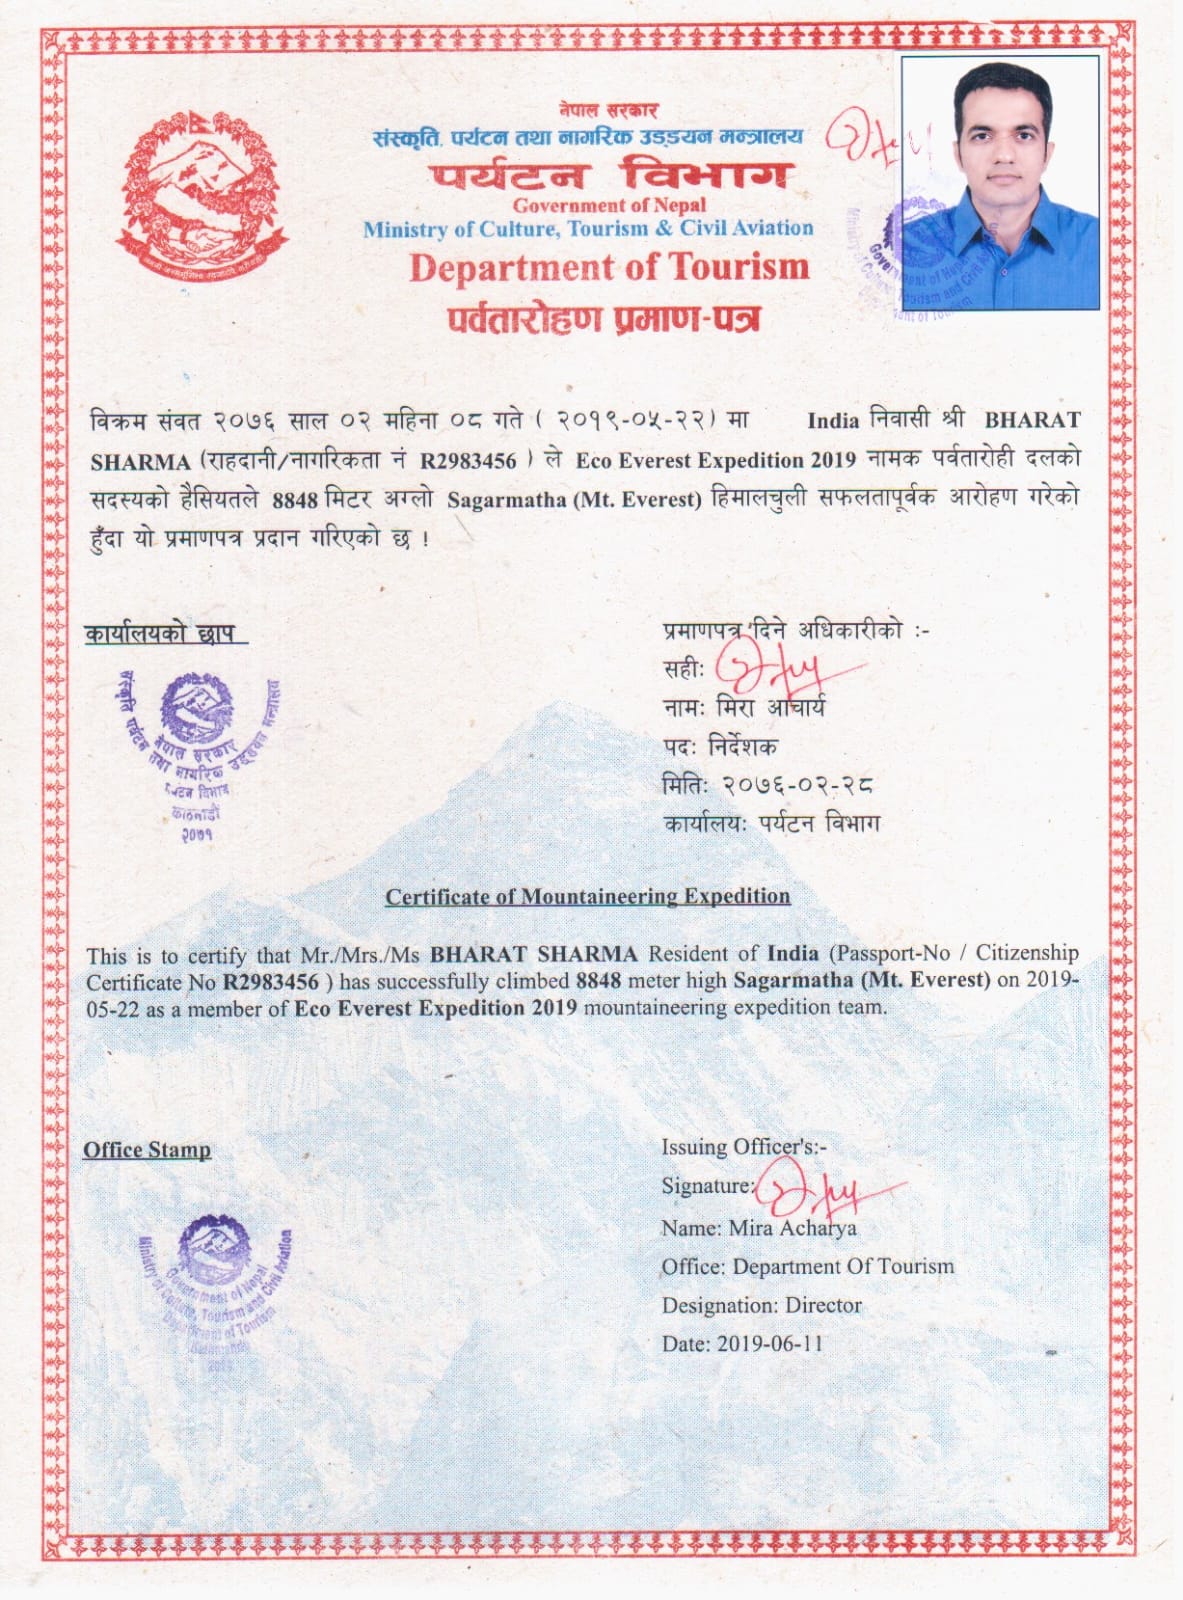 भरत शर्मा के माउंट एवरेस्ट फतह के प्रमाण पत्र